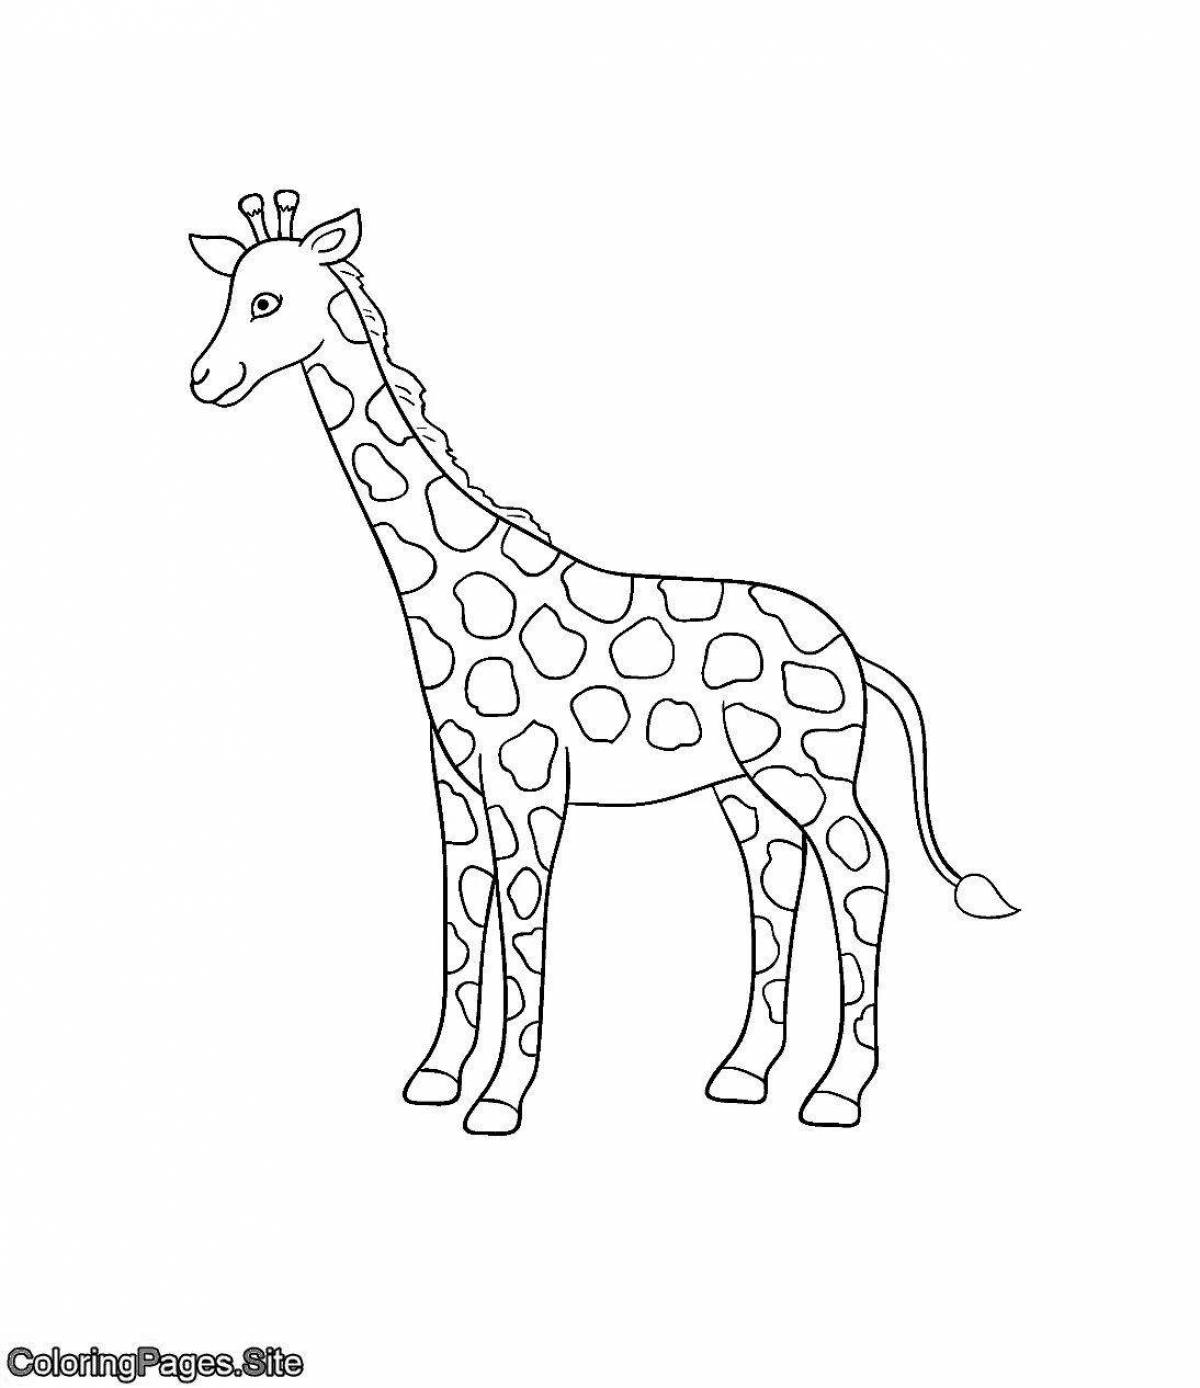 Забавный рисунок жирафа для детей